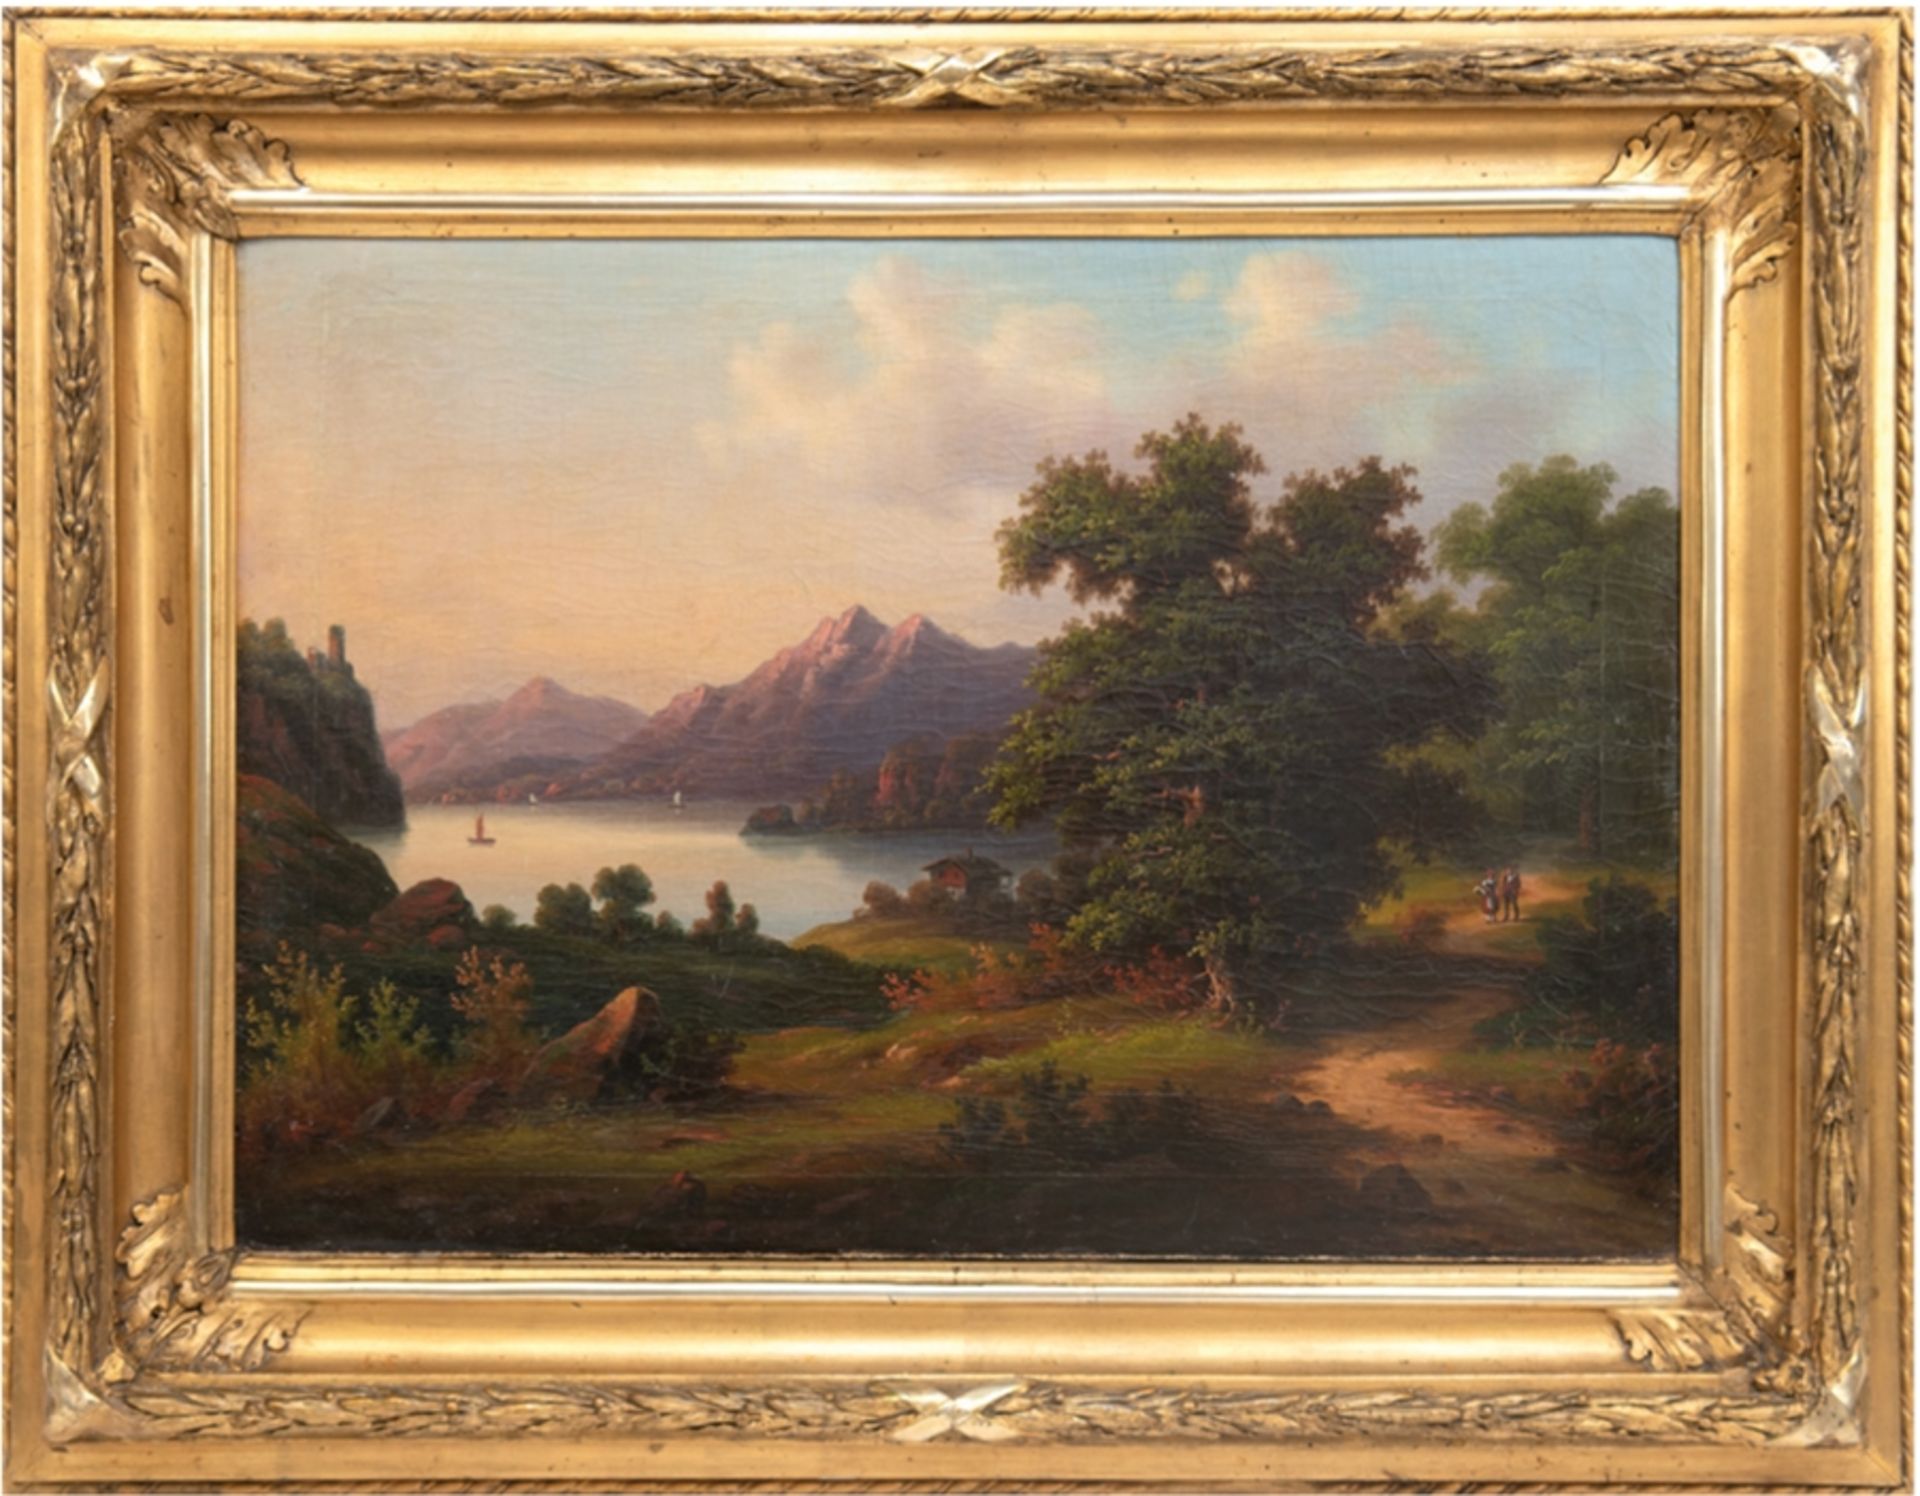 Italienischer Romantiker des 19. Jh. "Spaziergang am See", Öl/Lw., unsign., doubliert, 50x68 cm, R